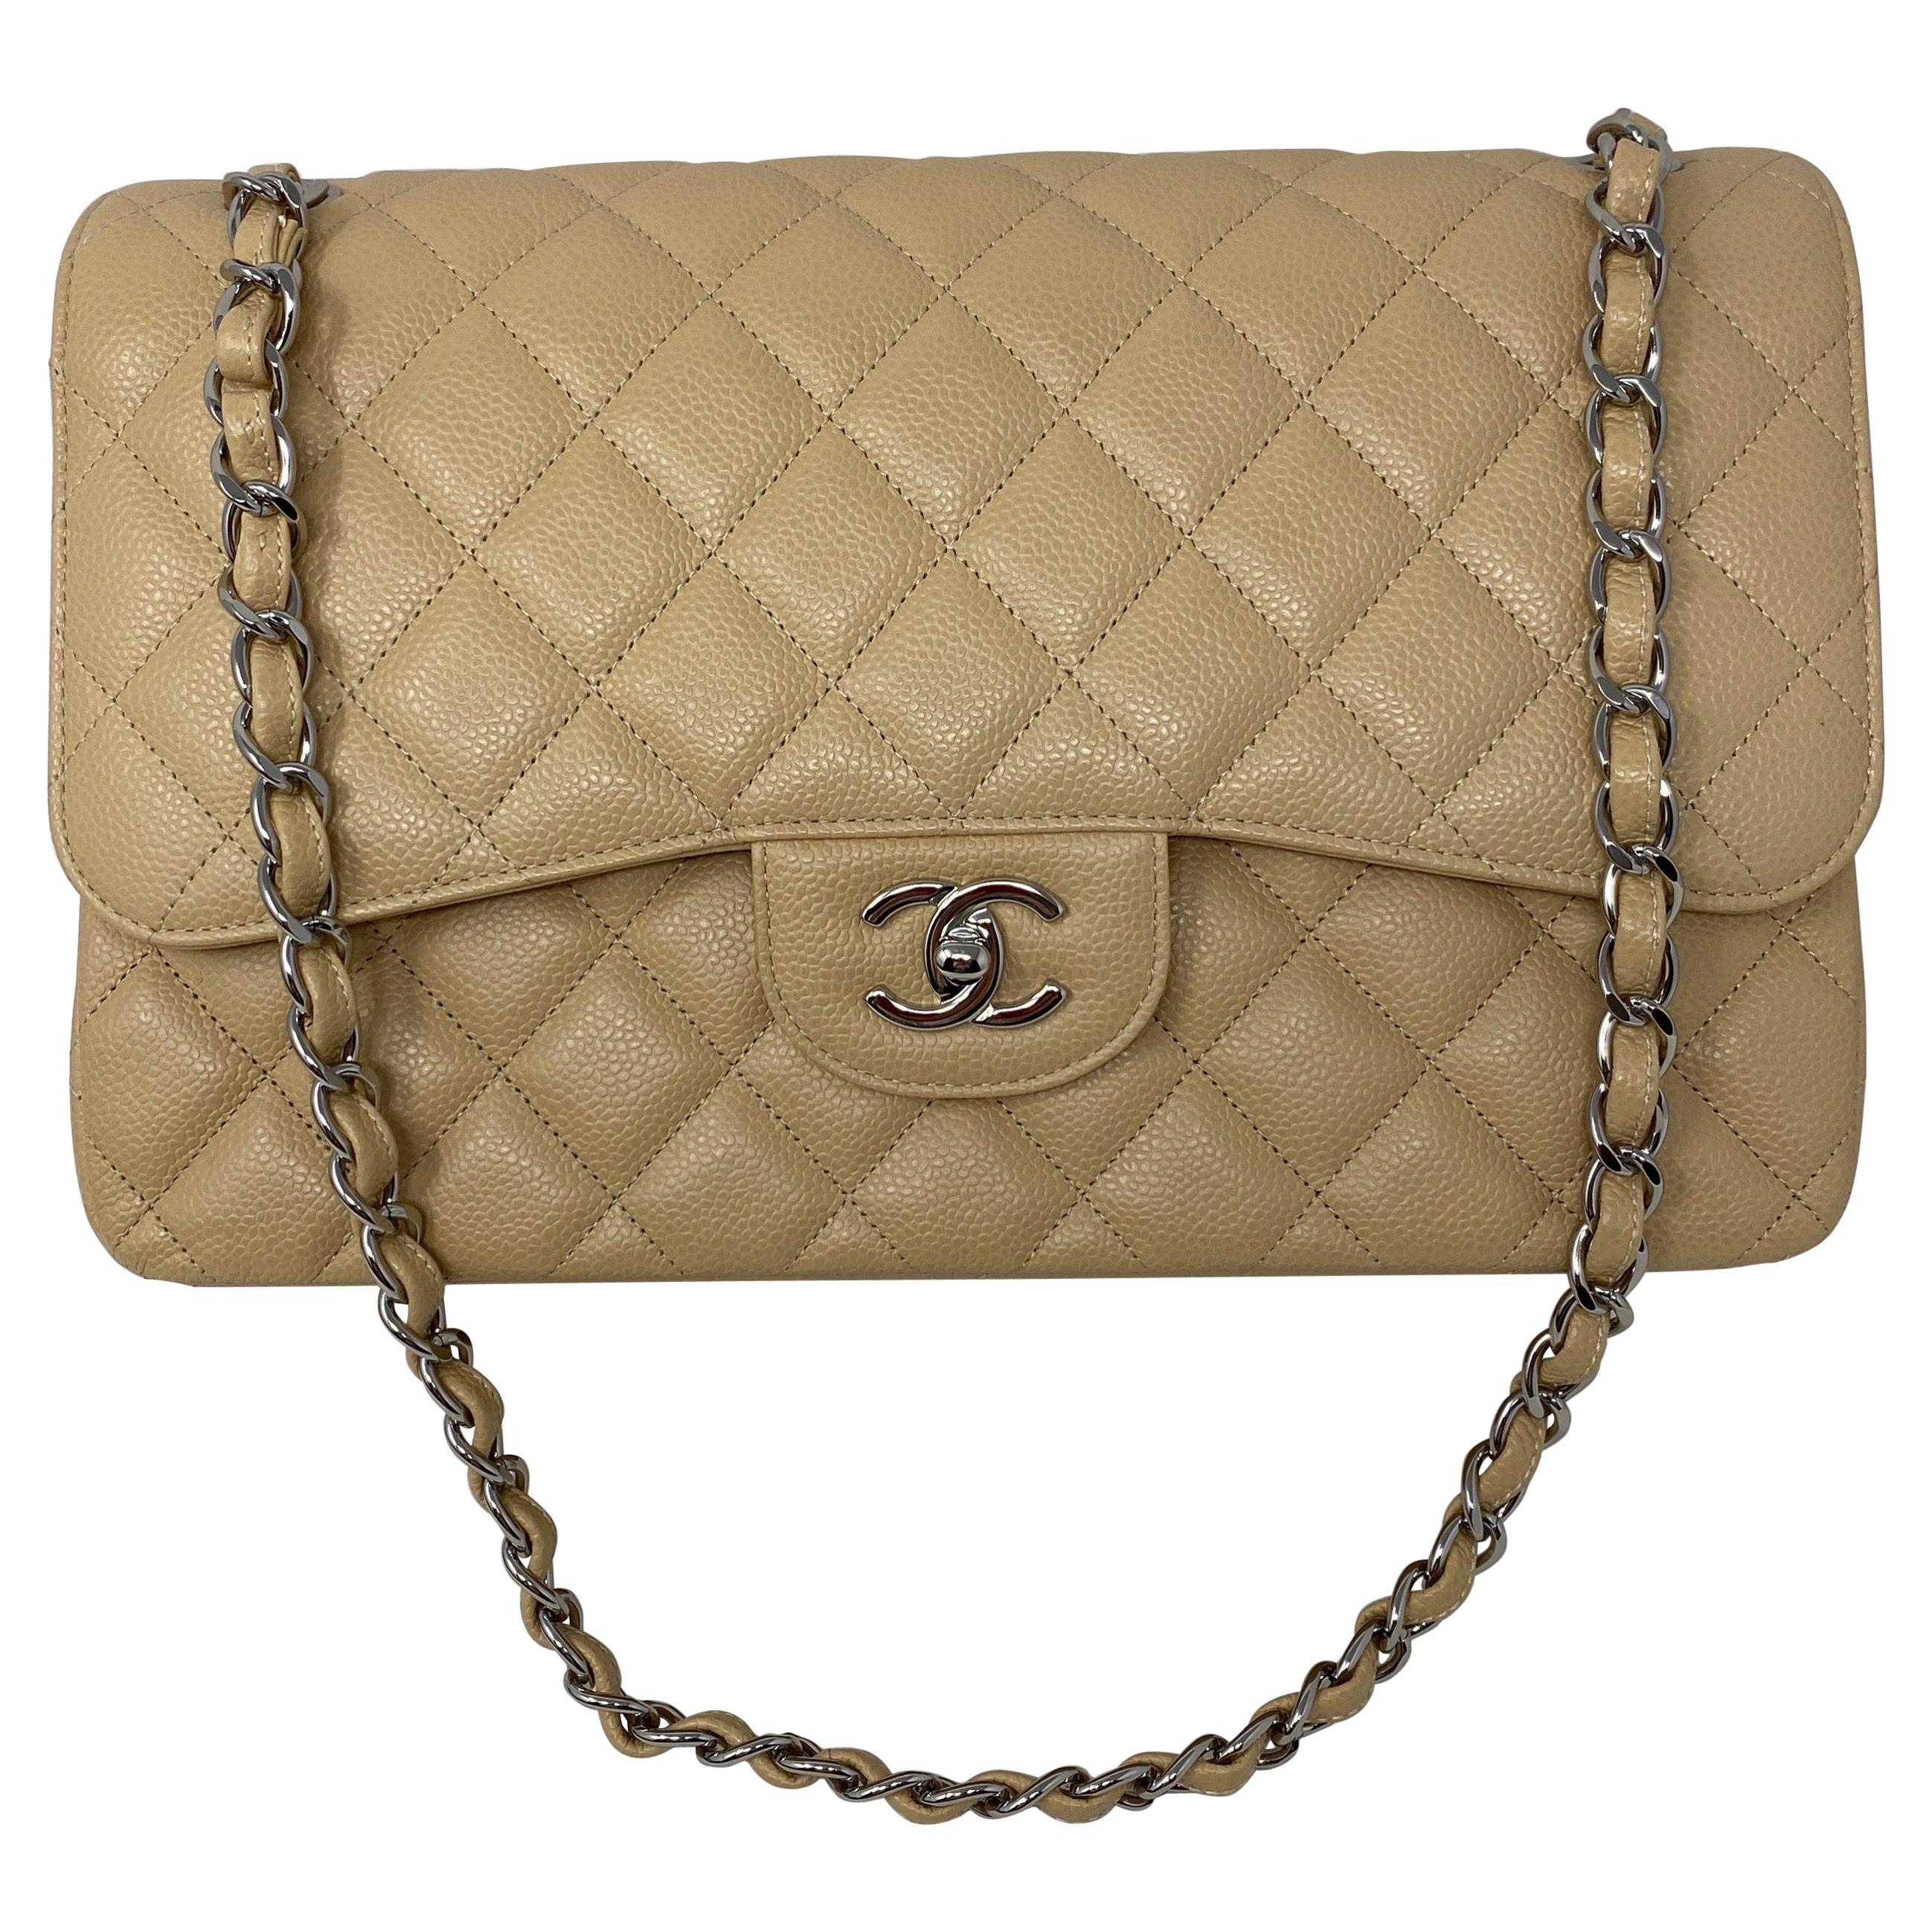 Chanel Beige Jumbo Double Flap Bag